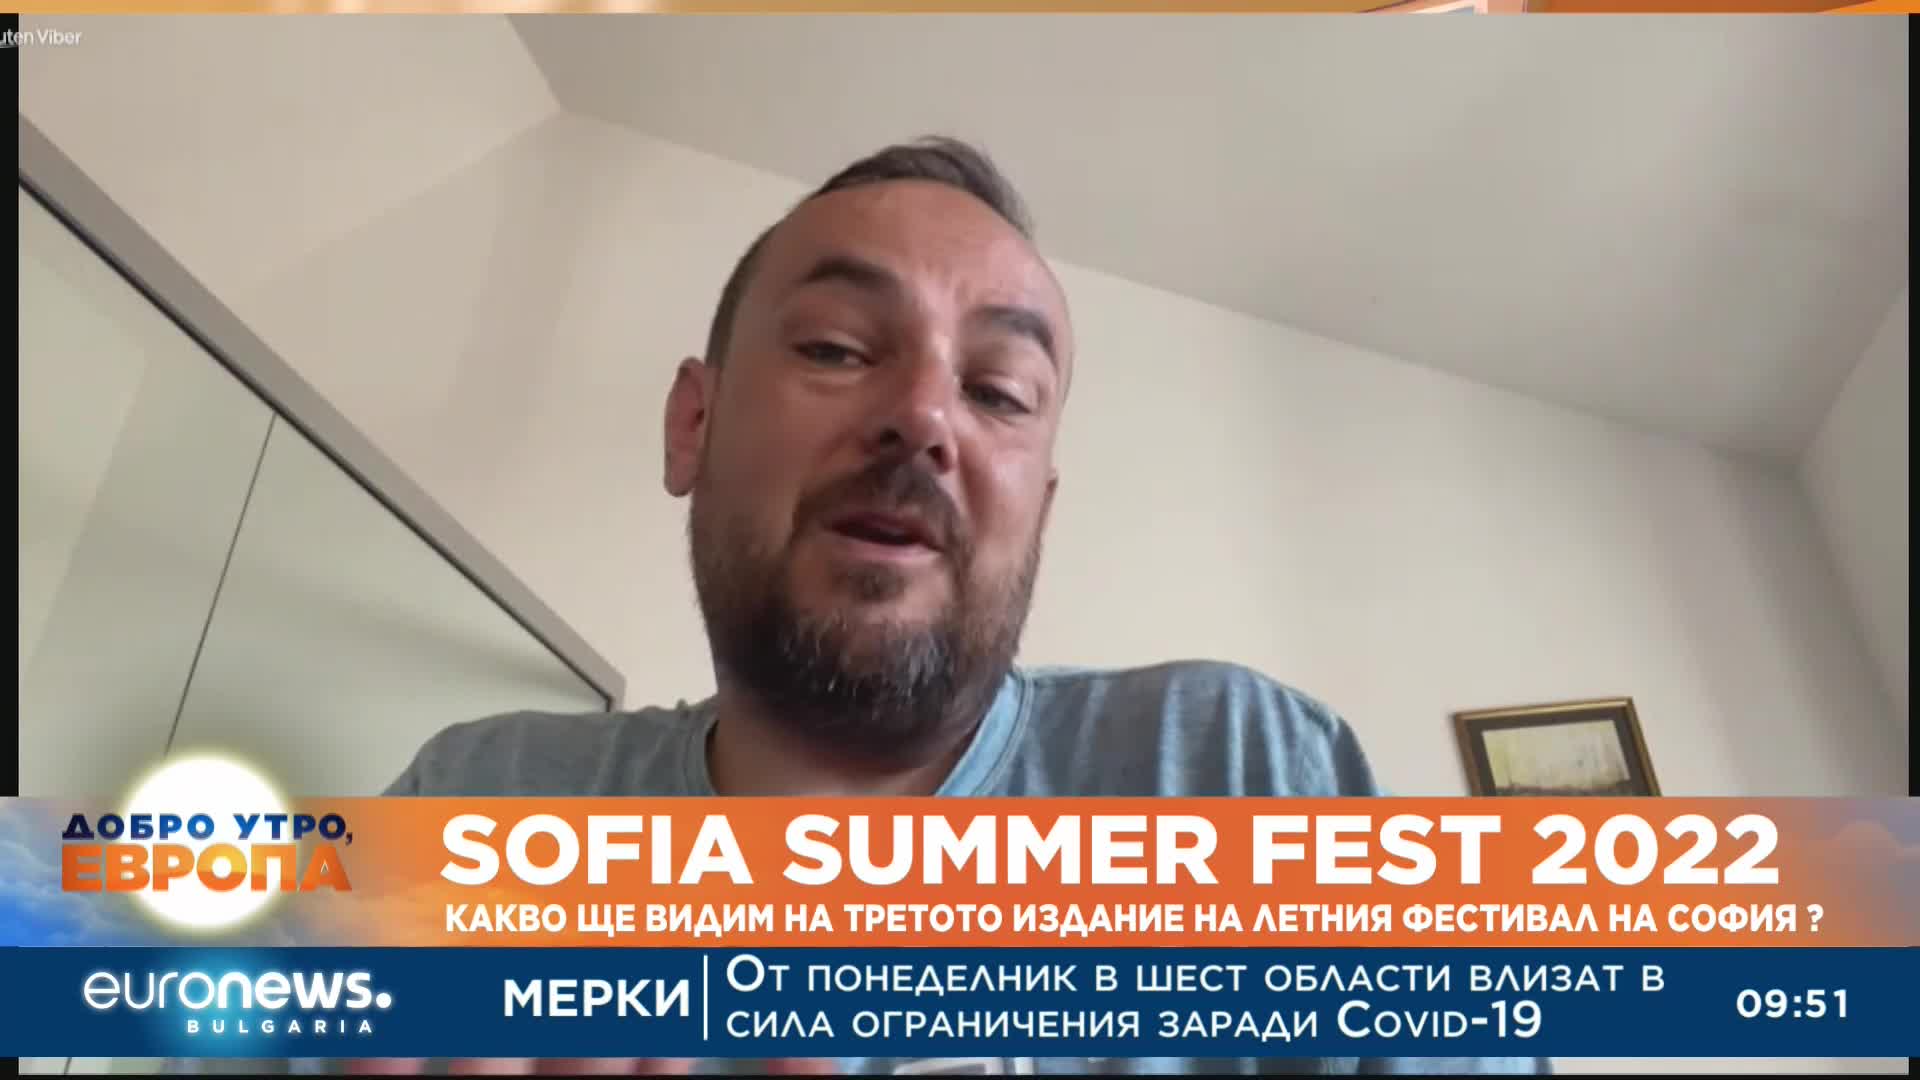 Алекси Калев, организатор на Sofia Summer Fest 2022